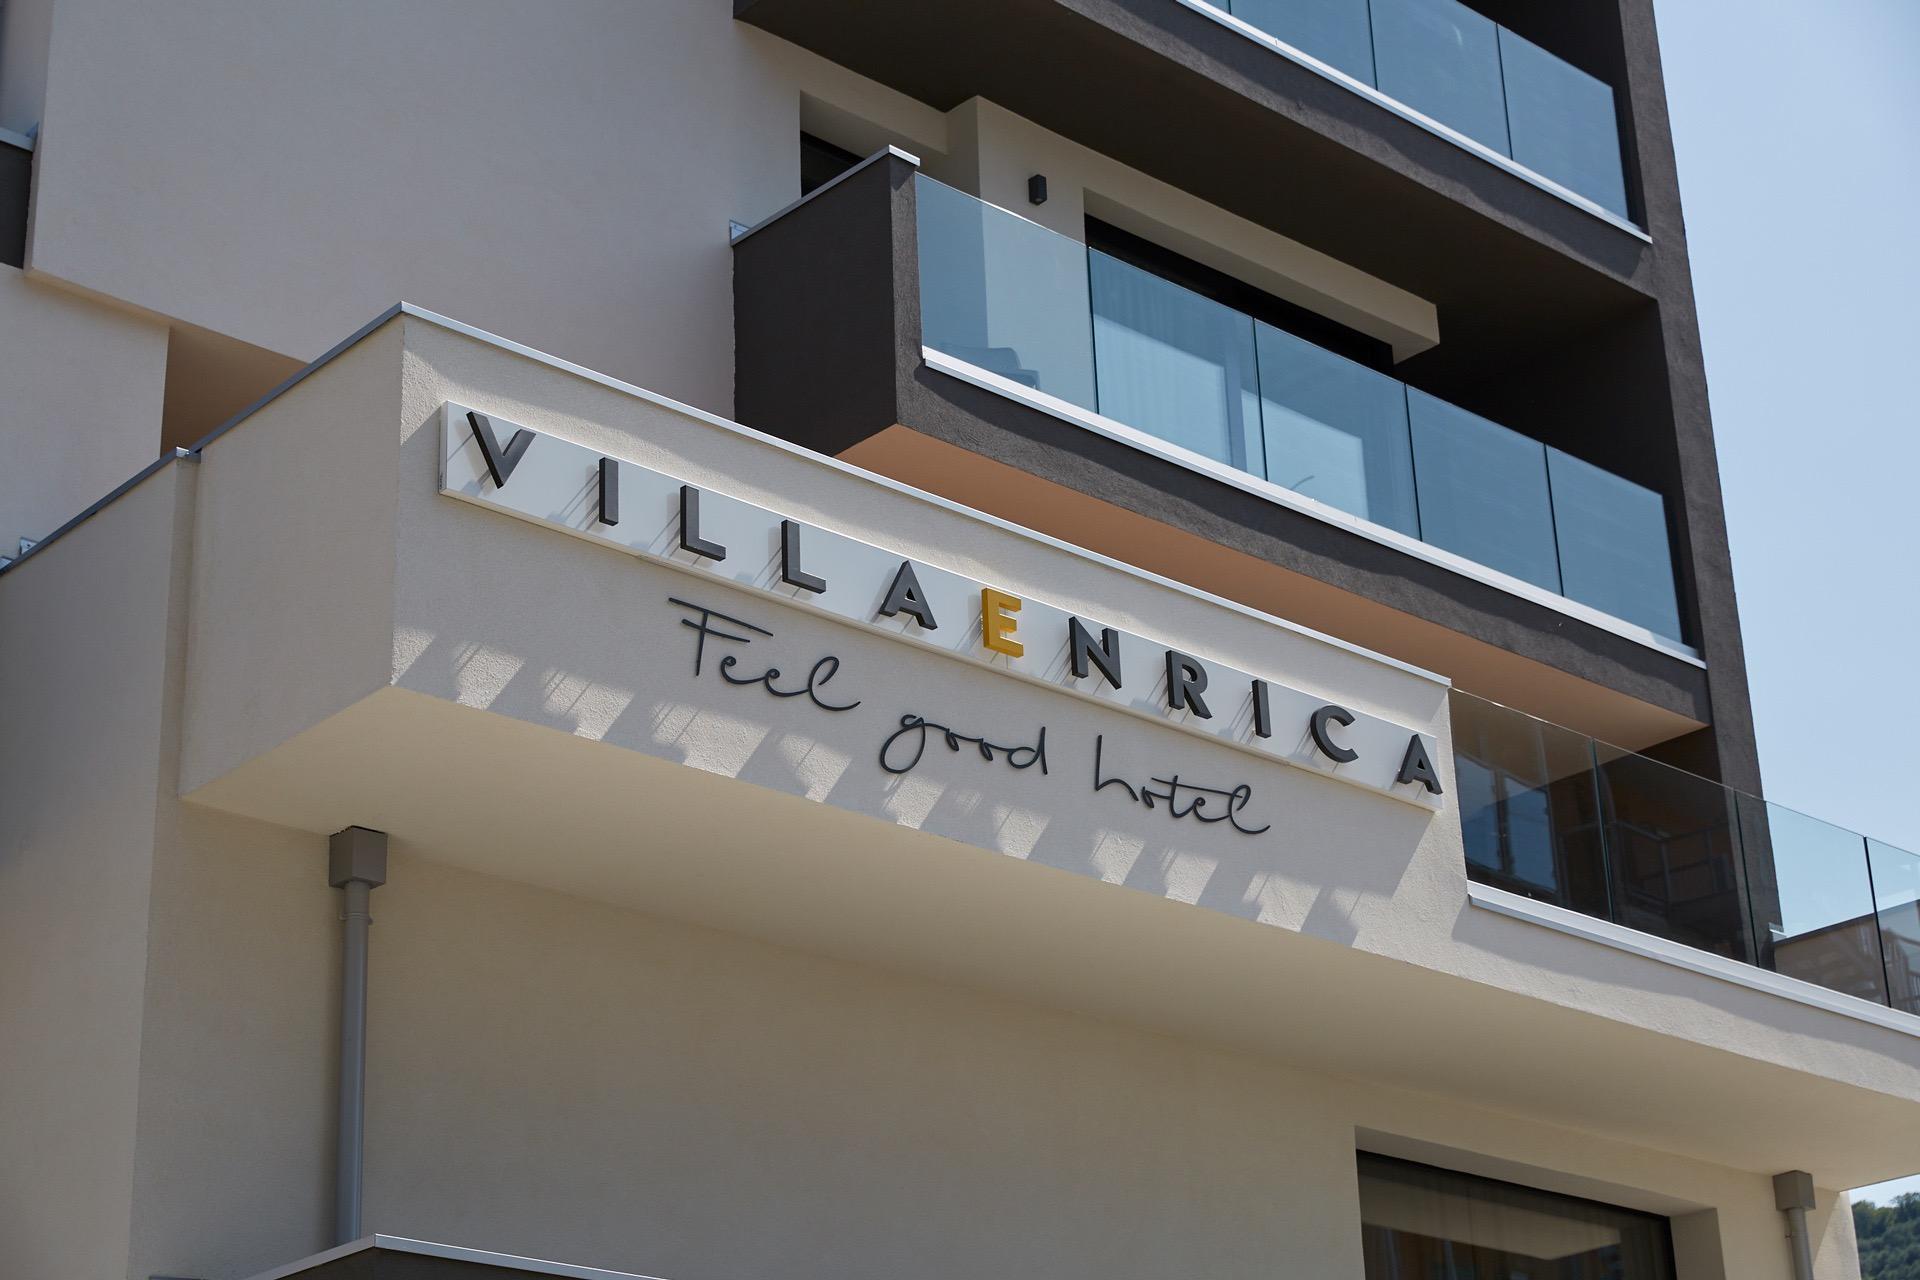 Hotel Villa Enrica - Riva del Garda